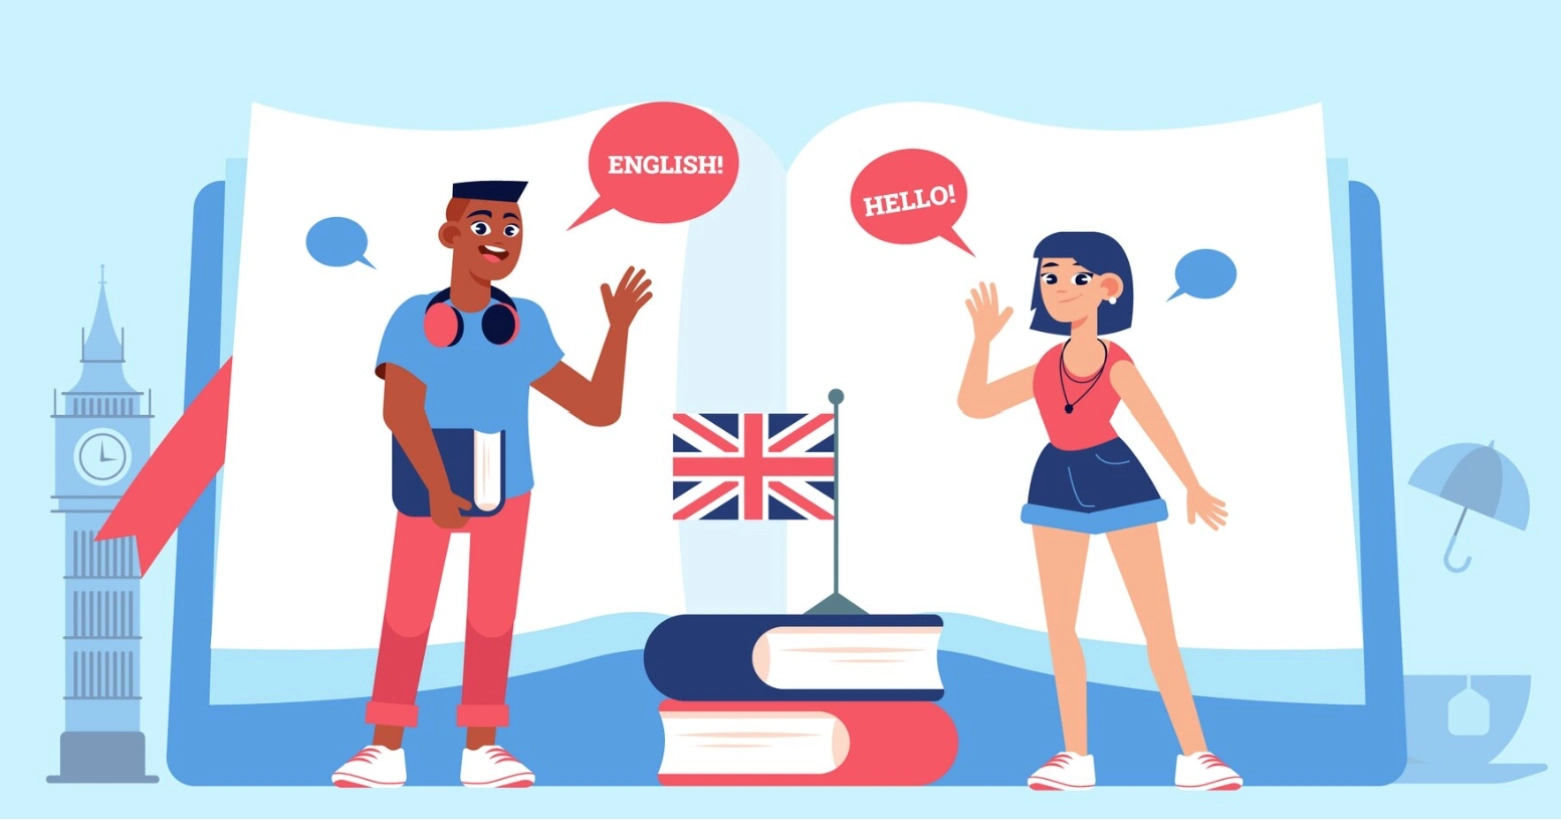 برای یادگیری زبان انگلیسی مقایسه کردن خود با دیگران ممنوع